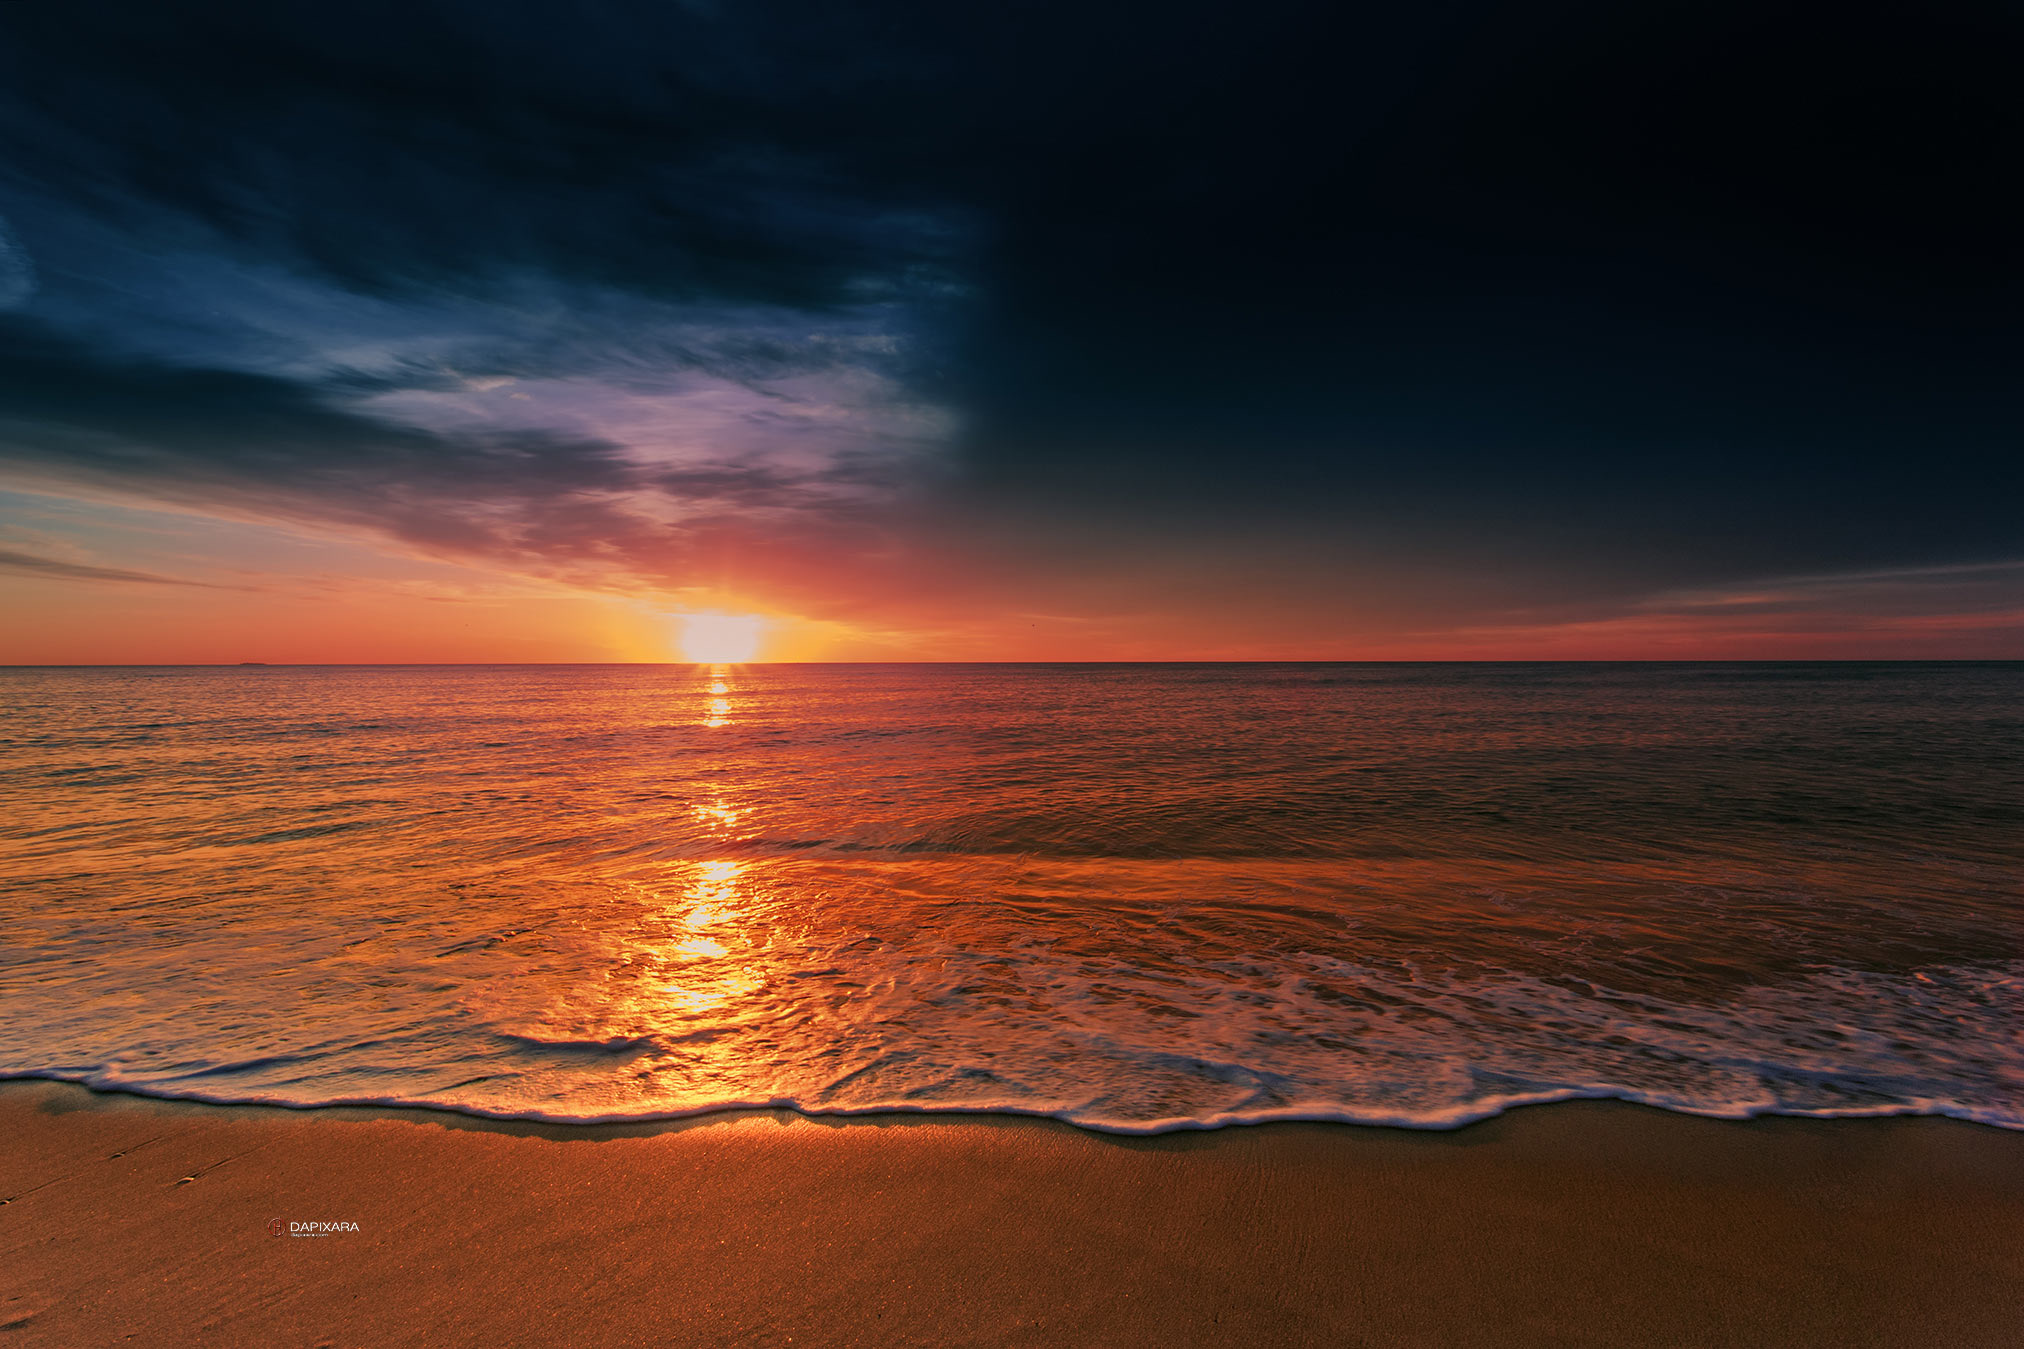 Atlantic Ocean sunrise, framed prints for sale dapixara.com